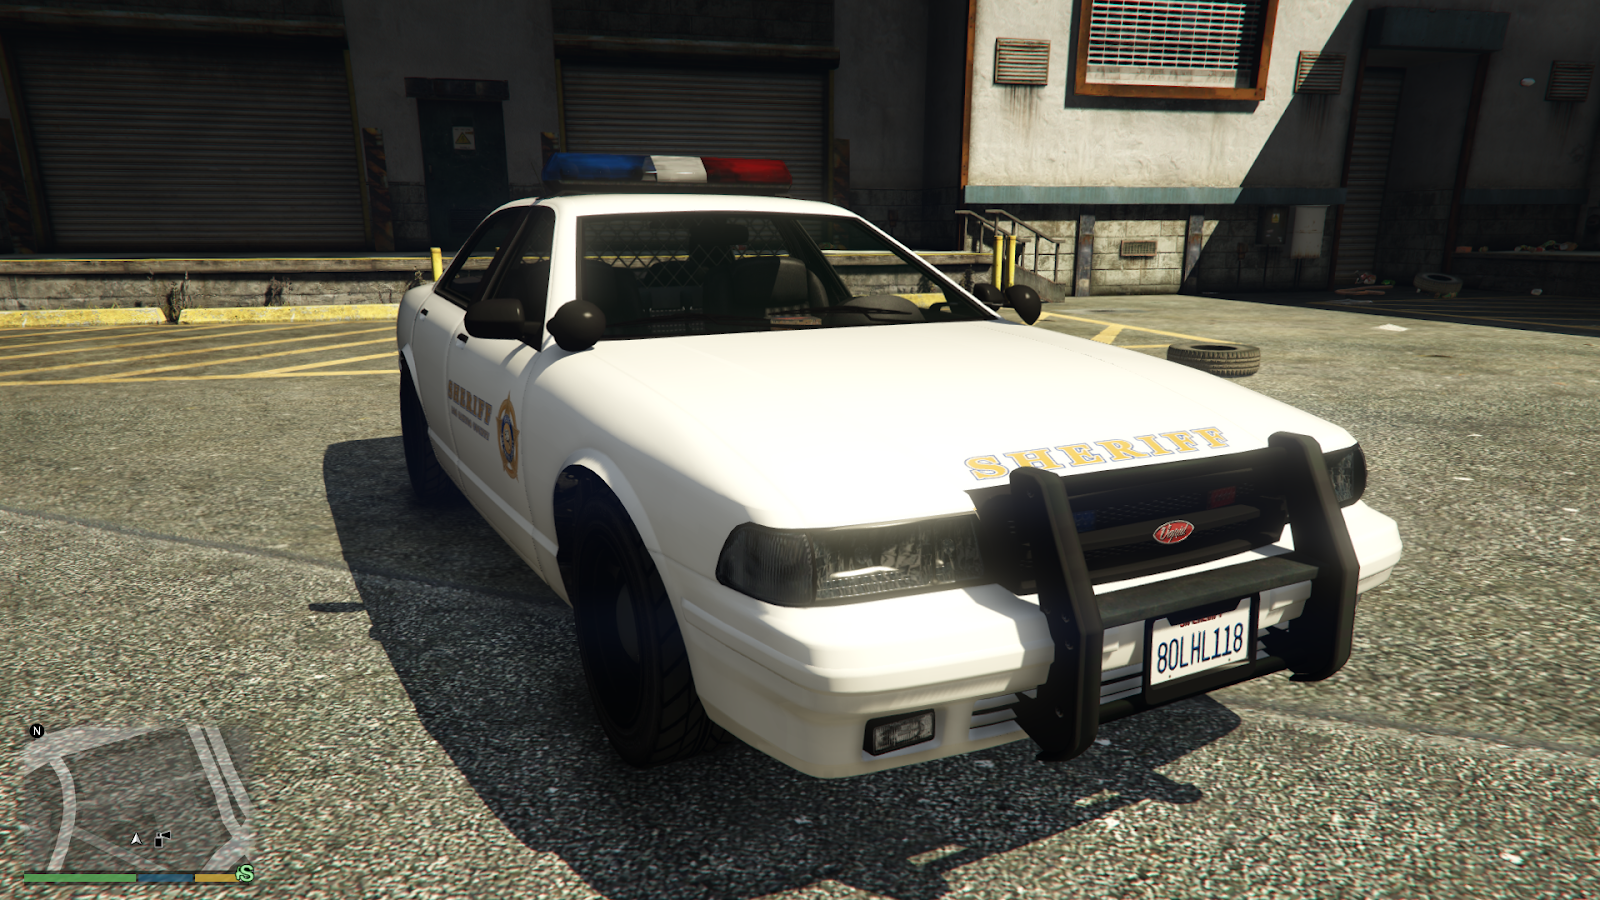 Sheriff Cruiser in GTA V